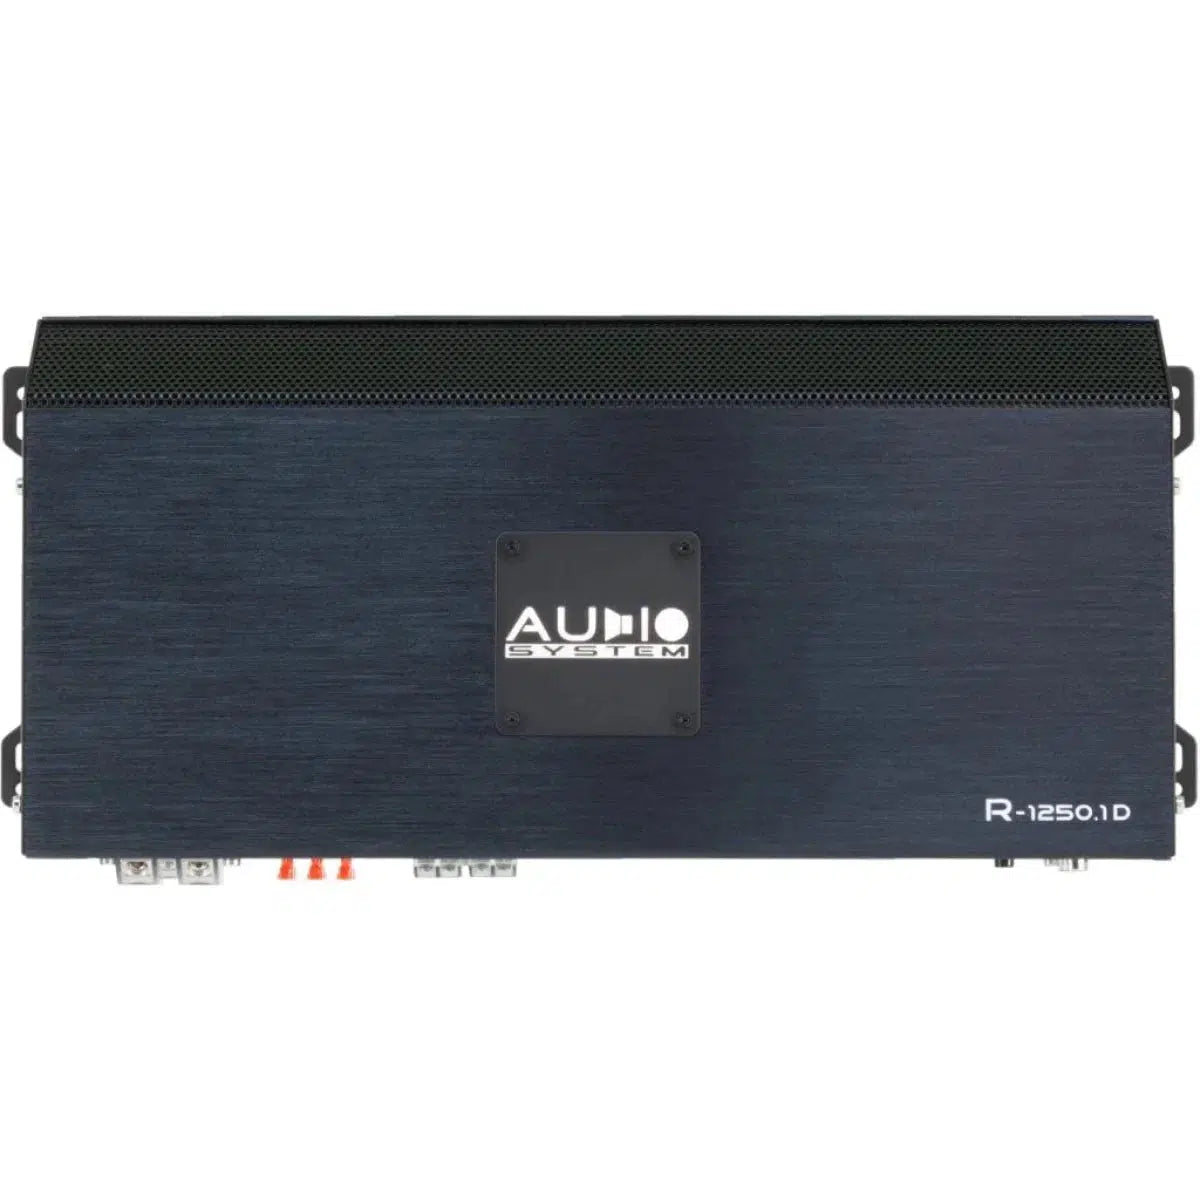 Audio System-R-1250.1 D-1-canal Amplificateur-Masori.fr